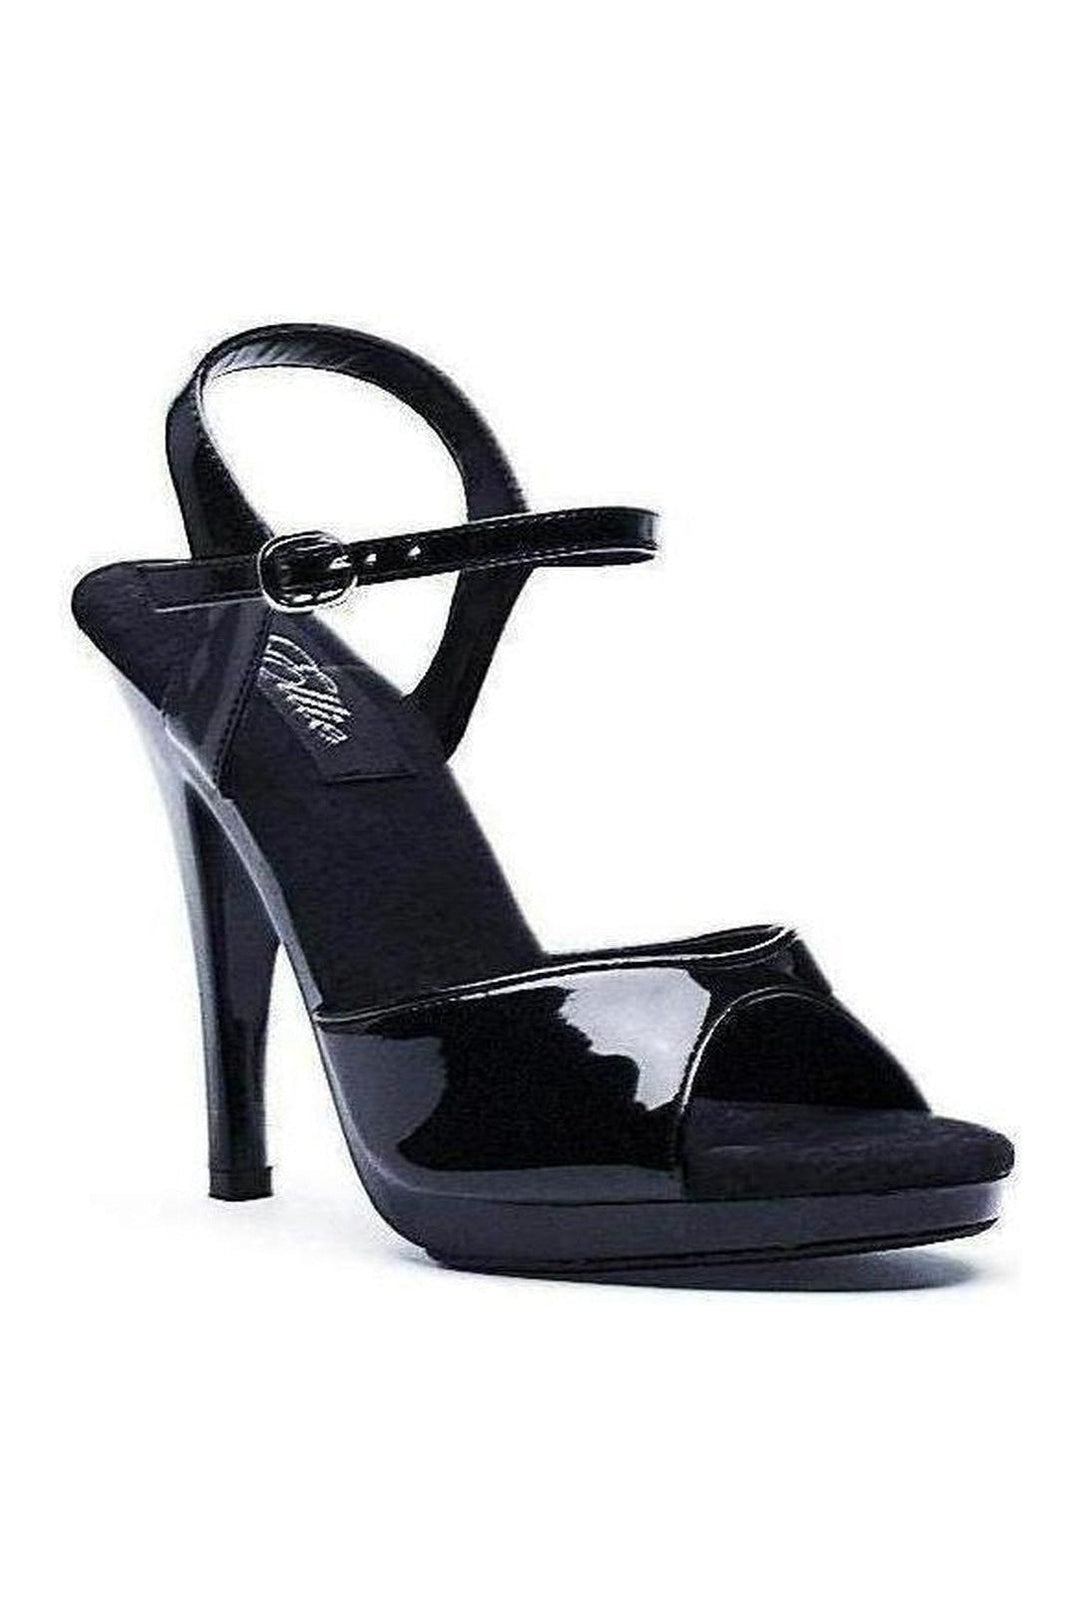 421-JULIET Sandal | Black Patent-Ellie Shoes-Black-Sandals-SEXYSHOES.COM